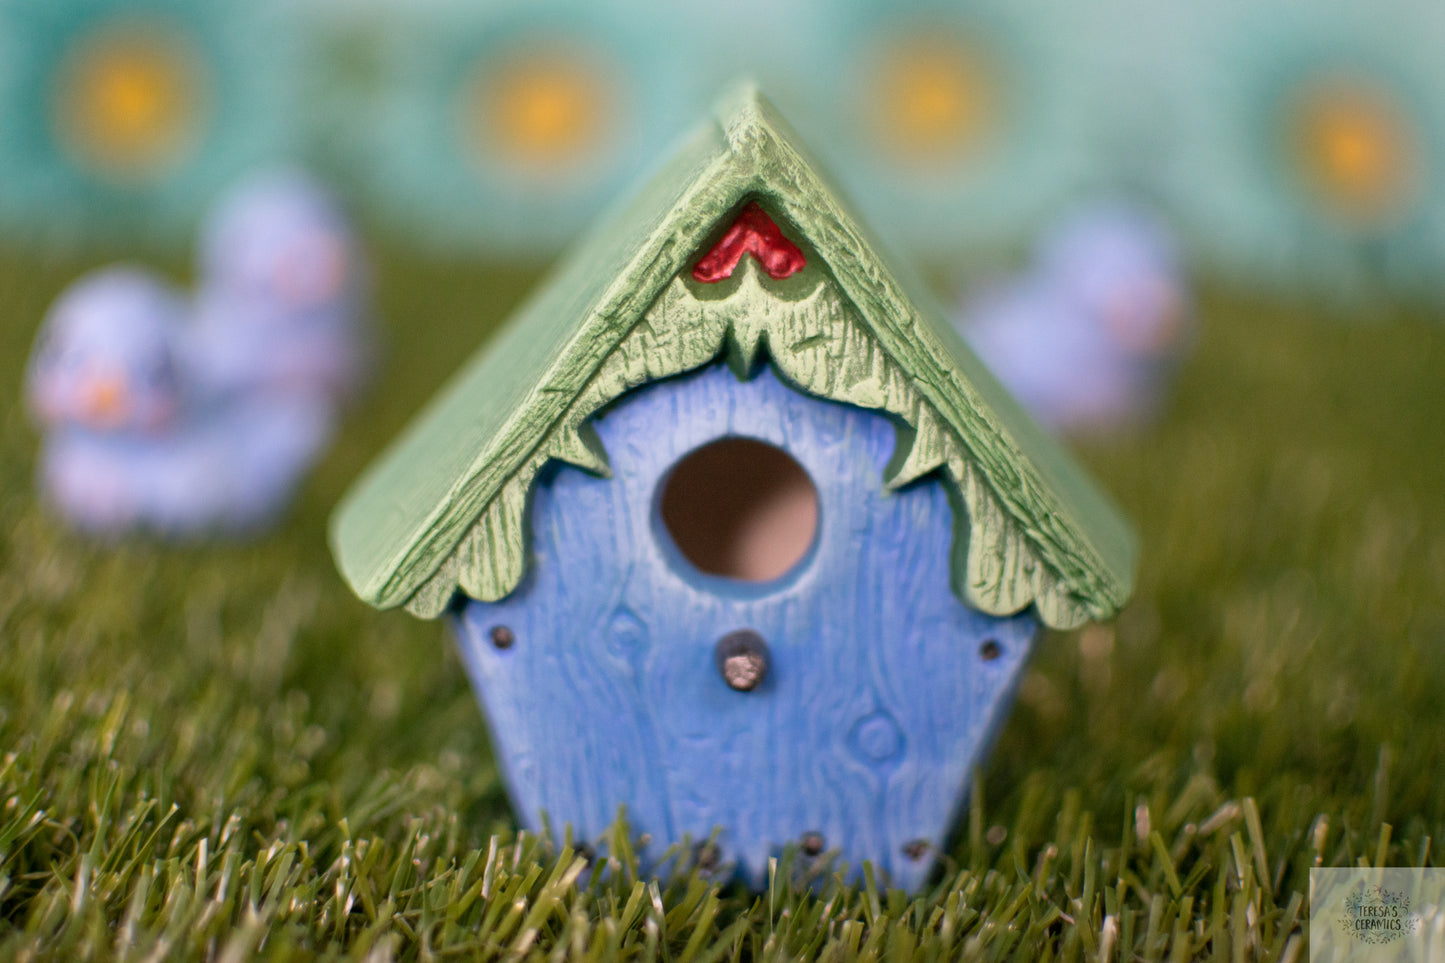 Ceramic Birdhouse | Birdhouse Garden Art | Yard Decor